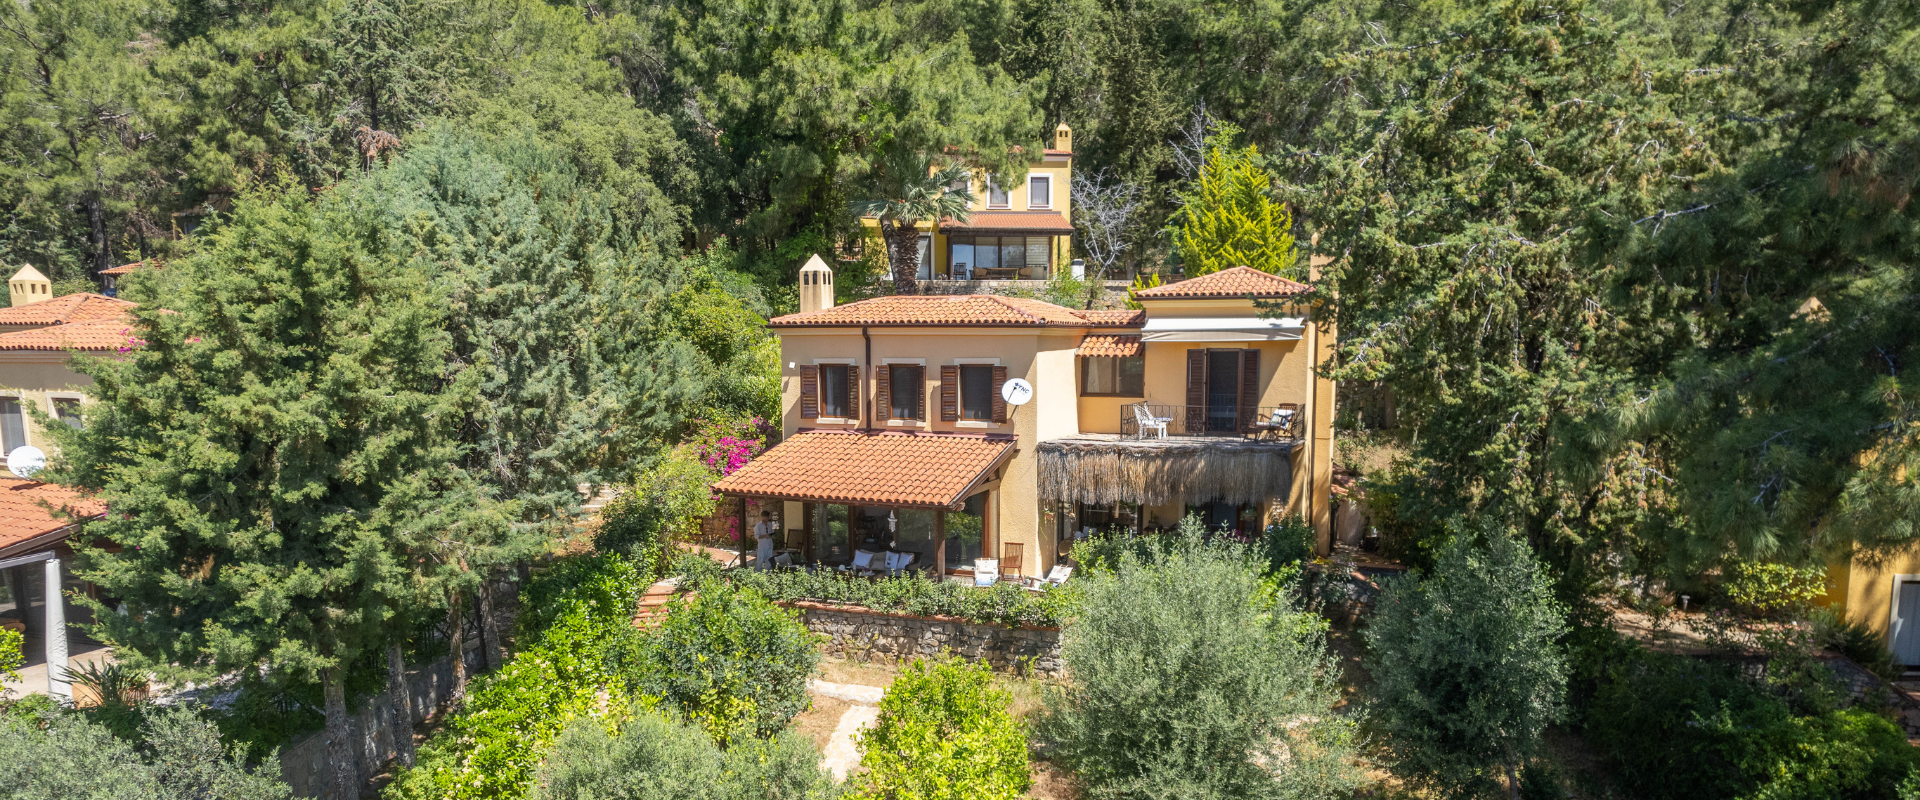 Villa For Sale in Rosmarin Gocek